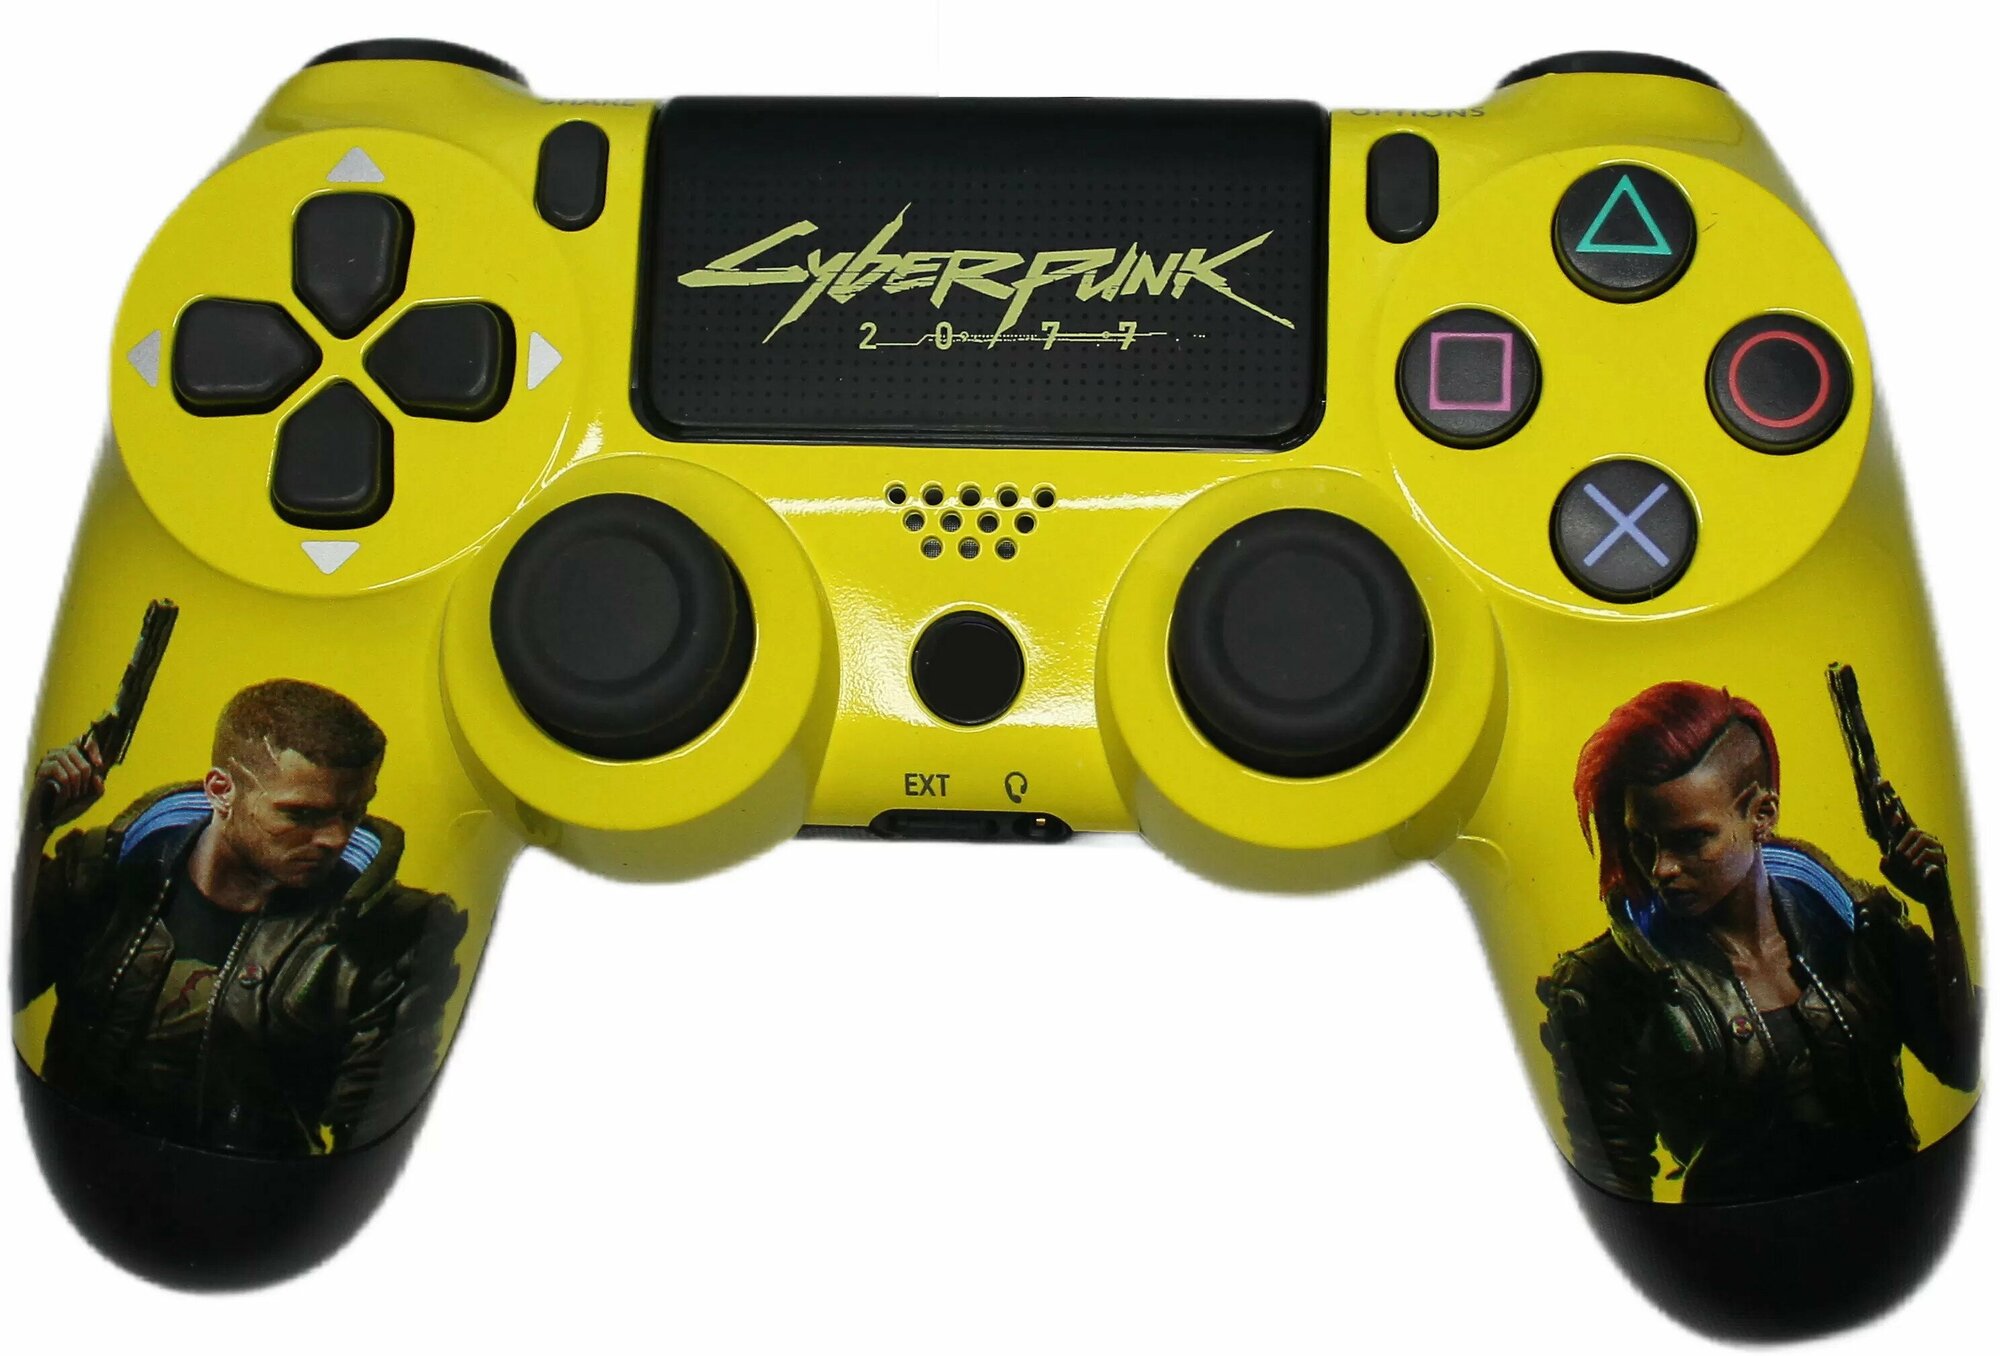 Беспроводной геймпад для PlayStation 4, модель Cyberpunk V2. Джойстик совместимый с PS4, PC и Mac, Apple, Android